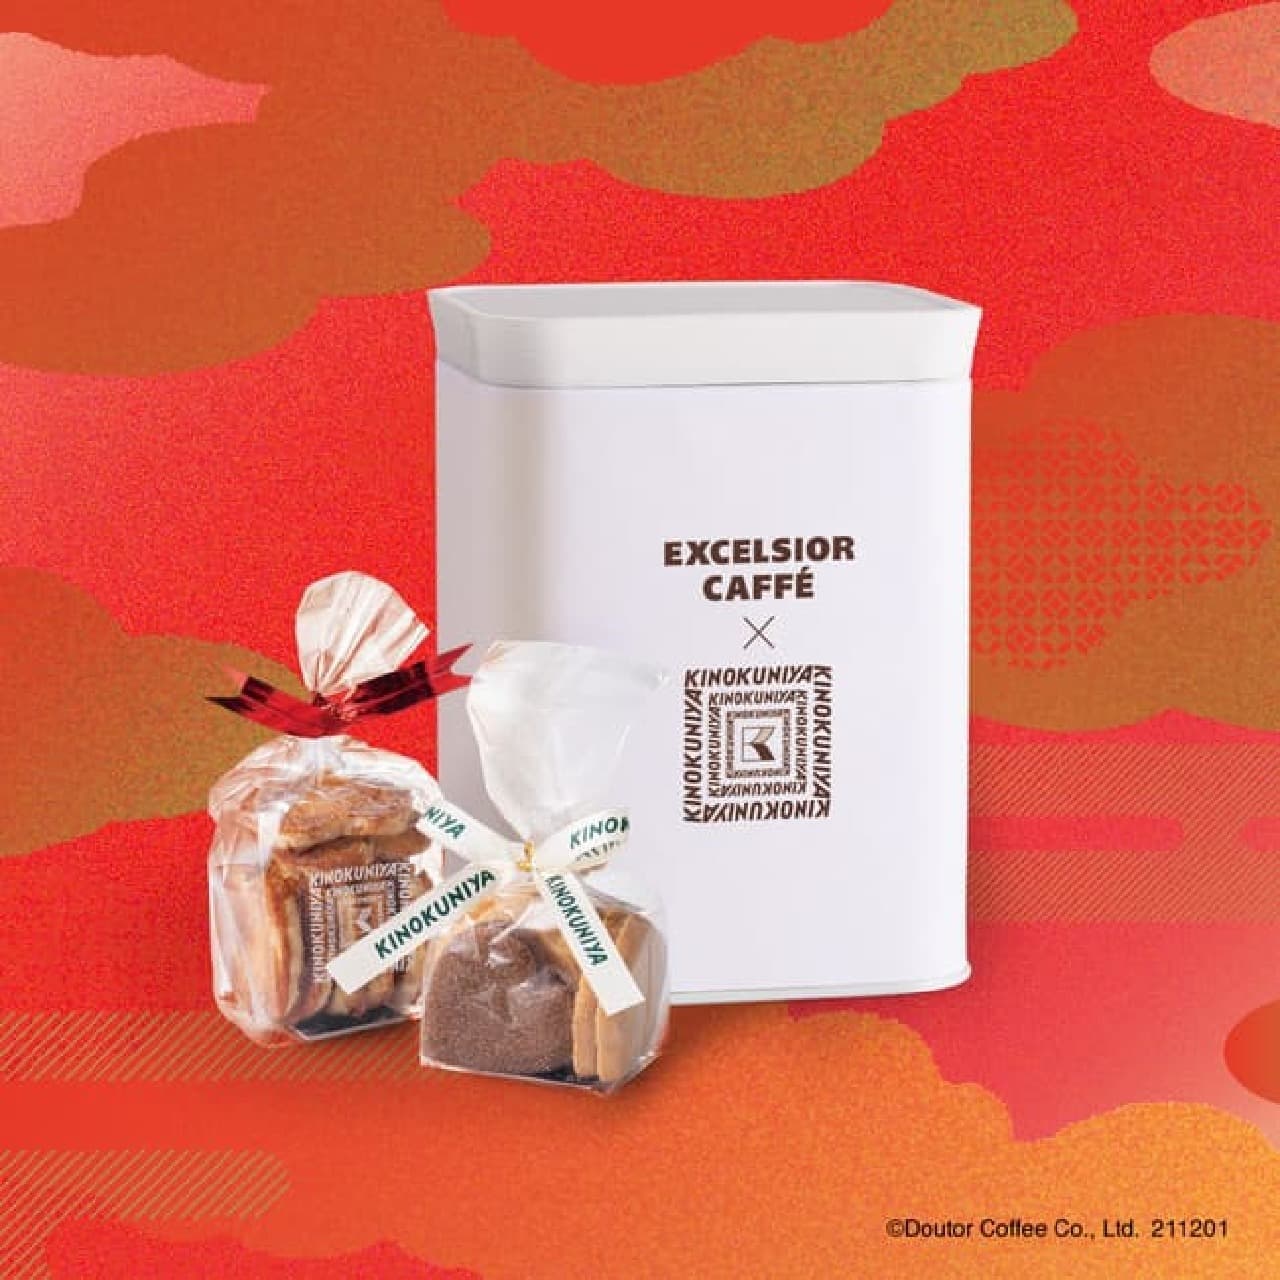 Excelsior Cafe Lucky Bag "2022 HAPPY BAG" Kinokuniya Collaboration Tote Bag with Kinokuniya Baked Goods!